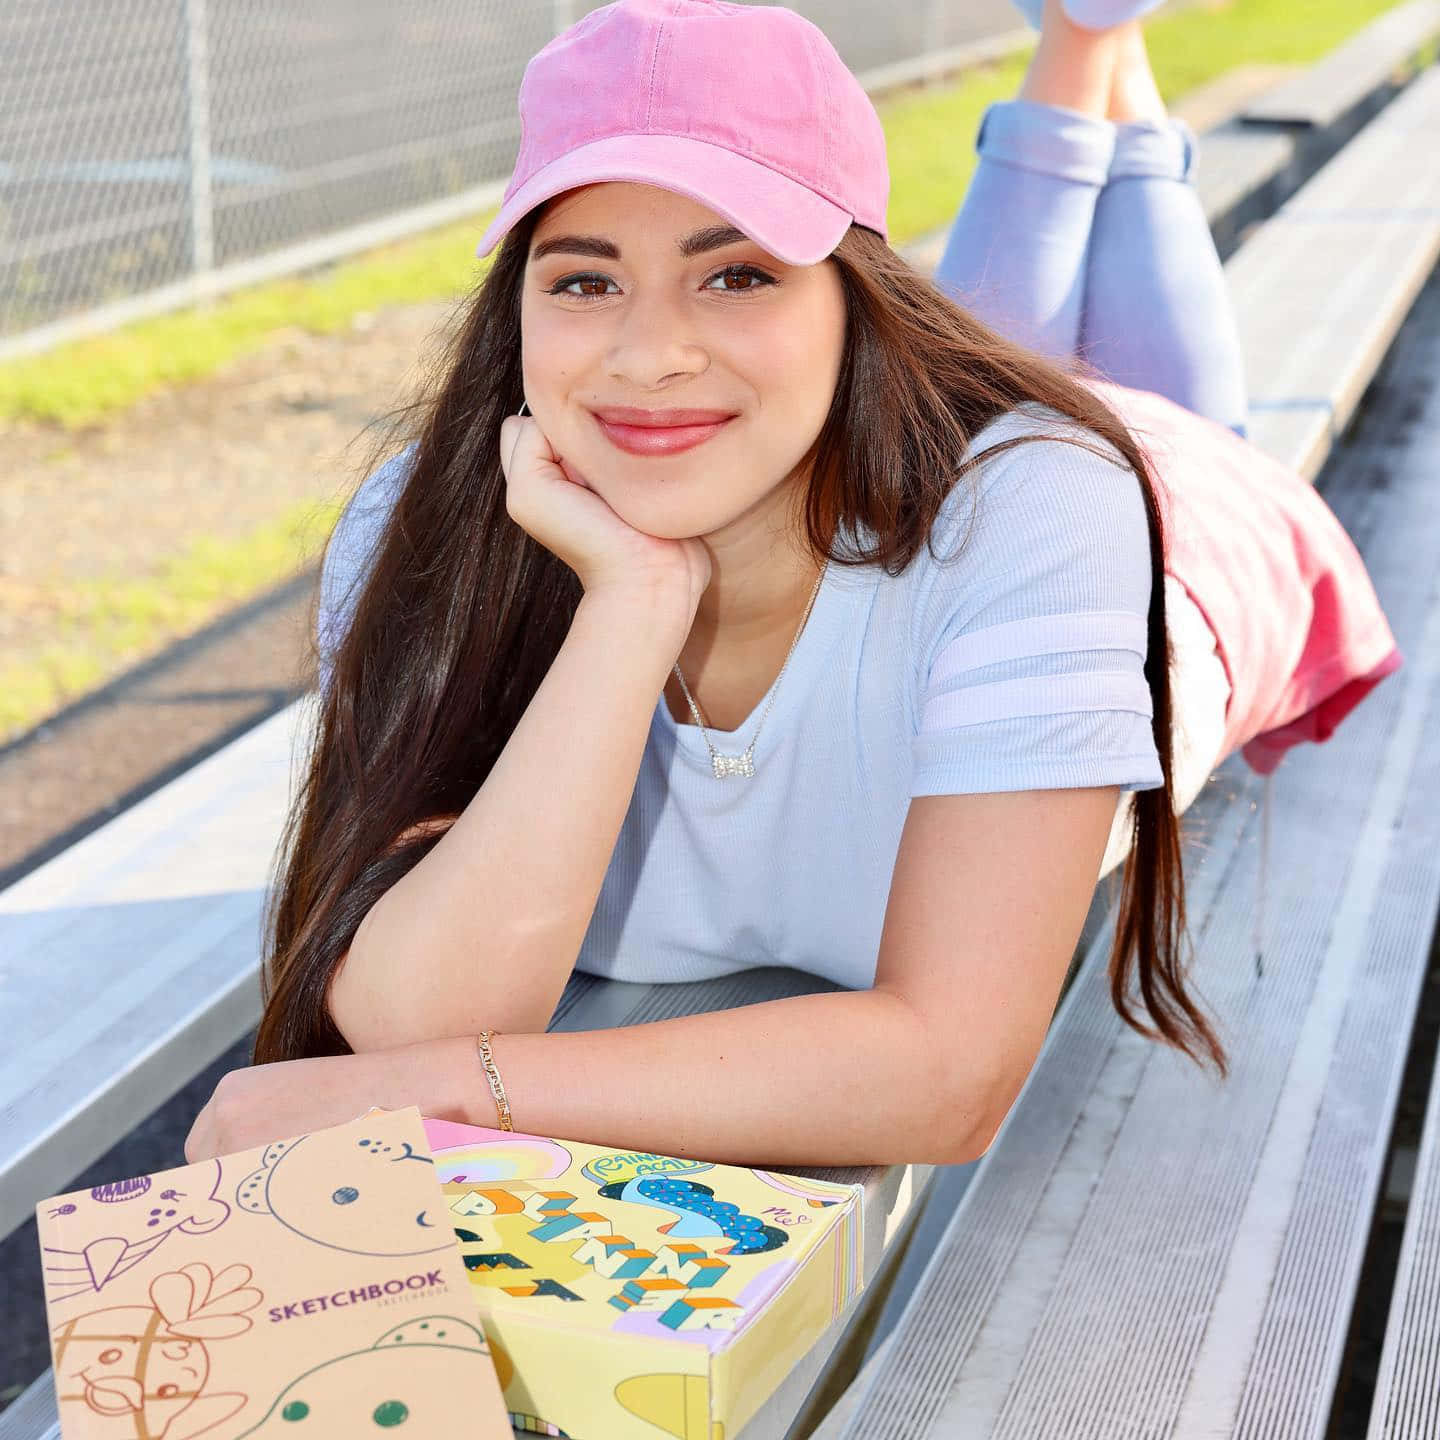 En pige ligger på en bænk med en pizzaboks. Wallpaper